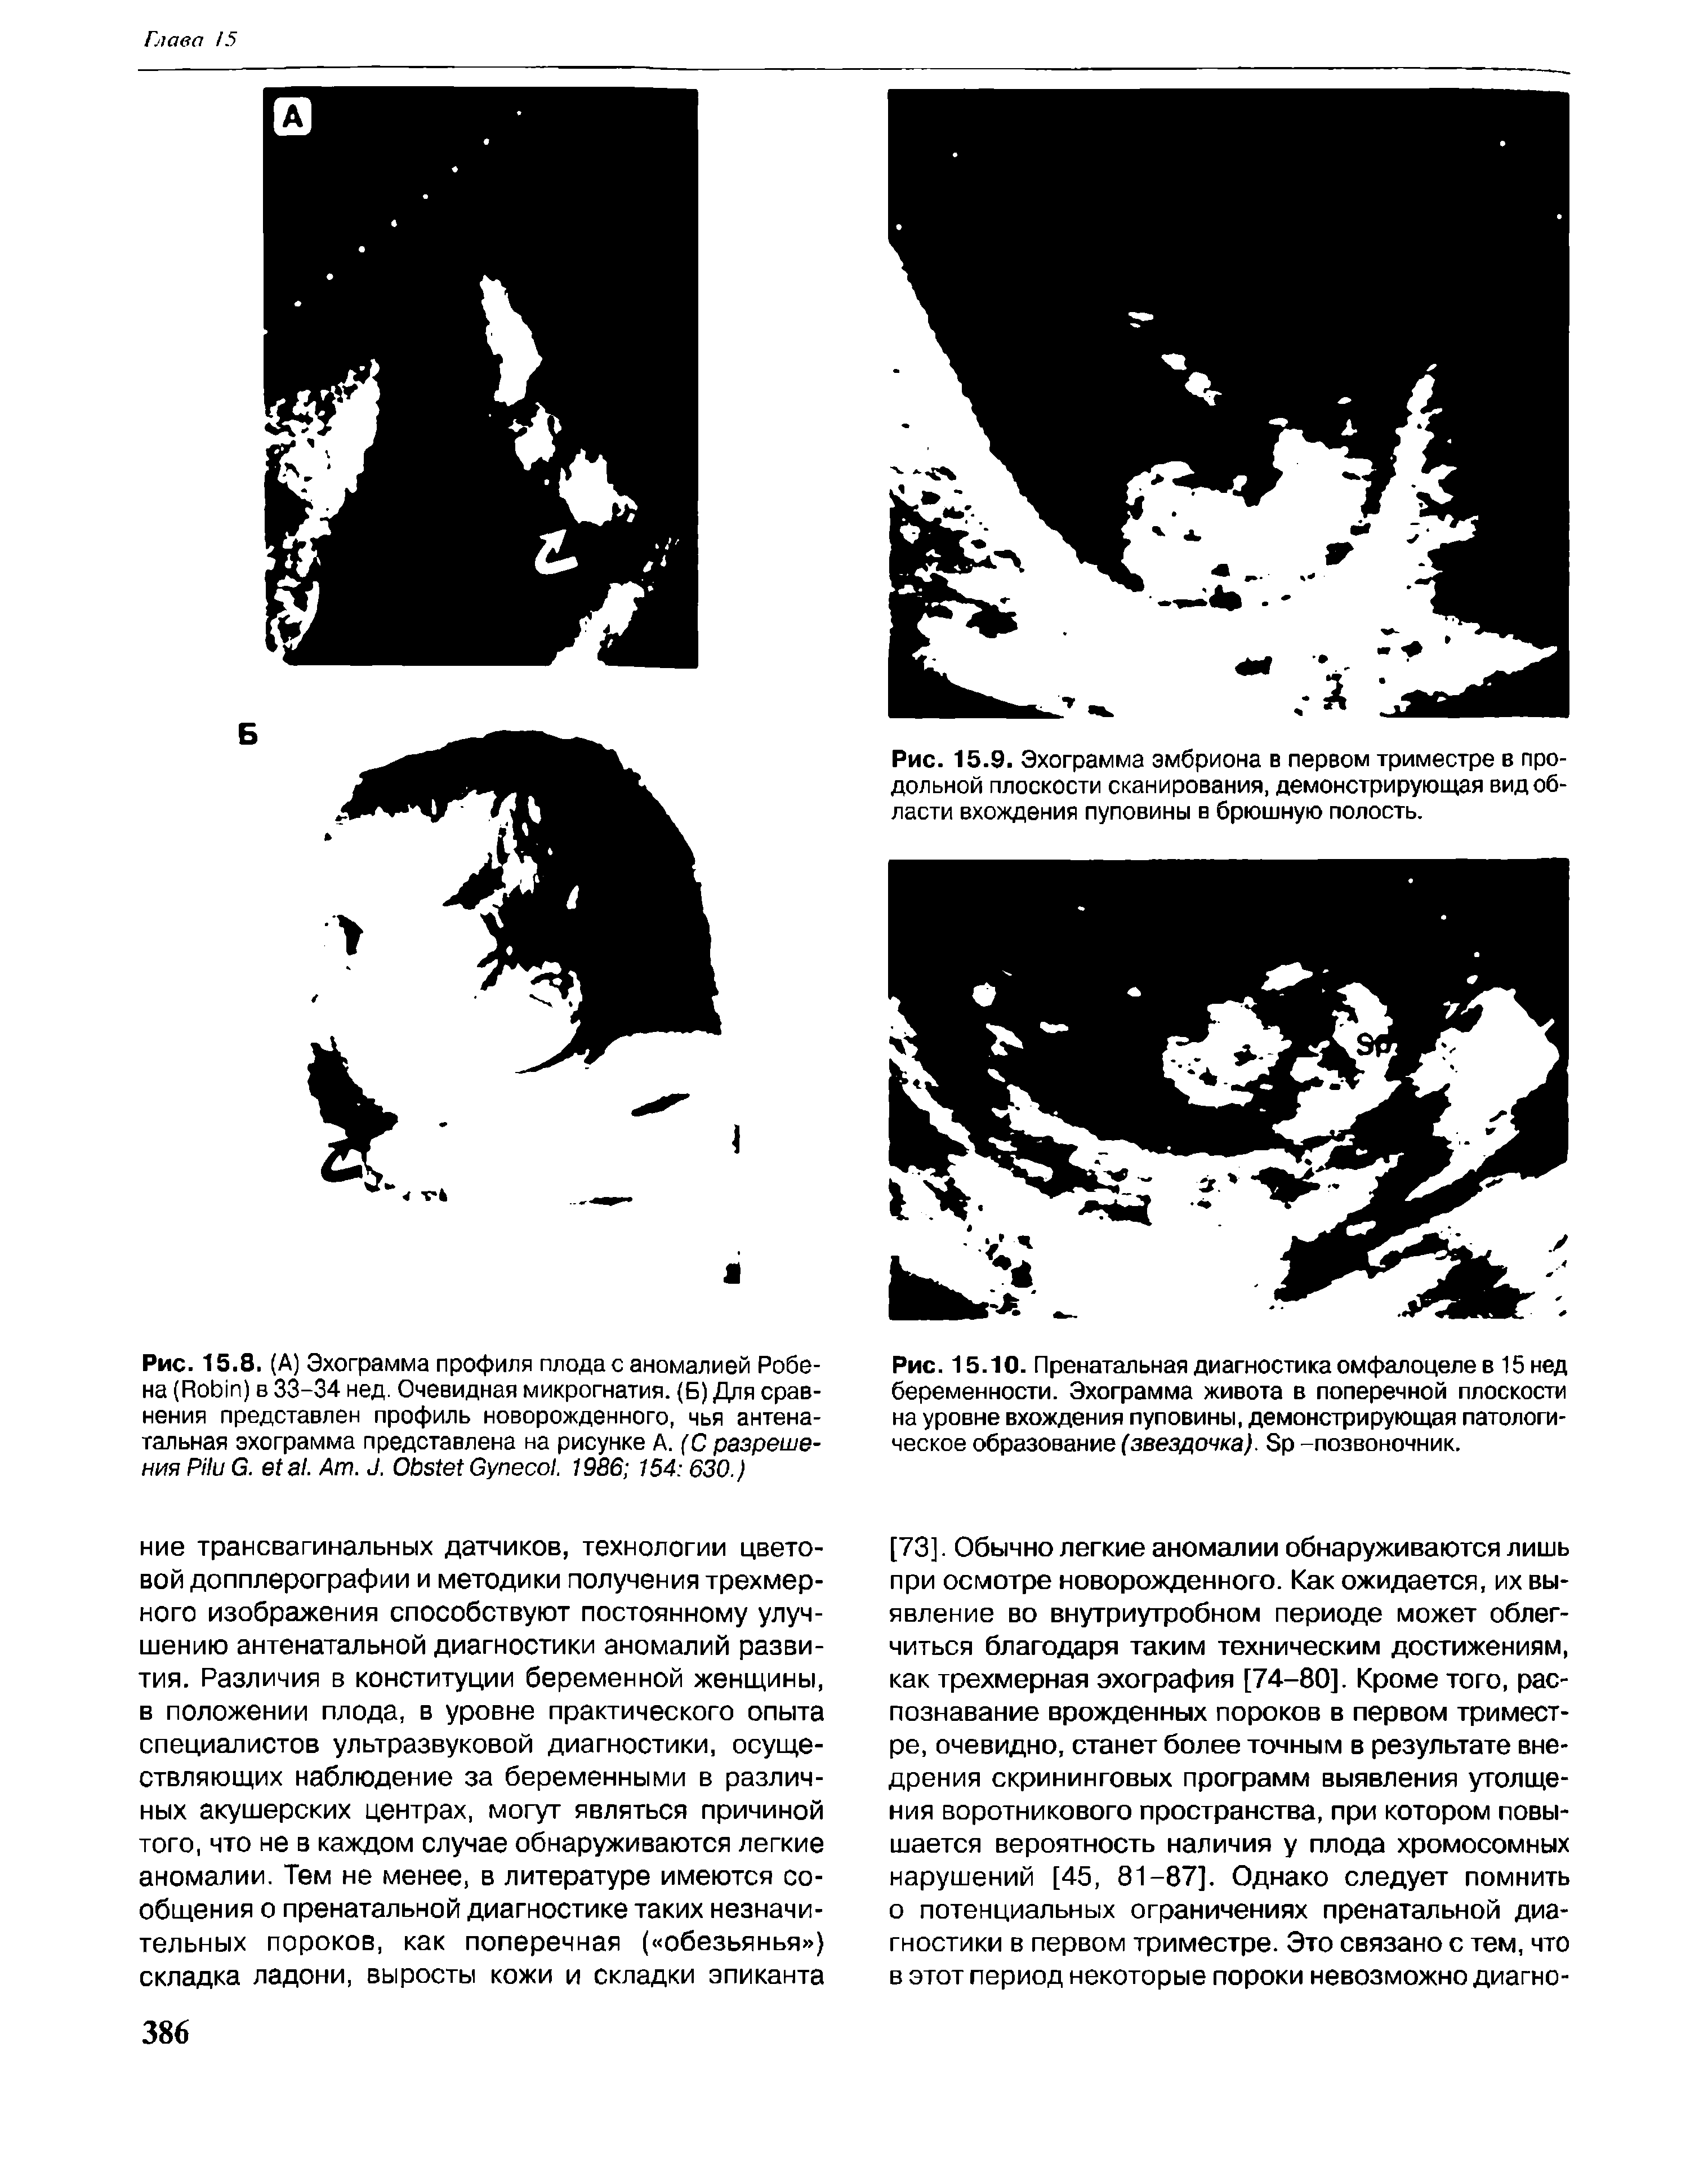 Рис. 15.9. Эхограмма эмбриона в первом триместре в продольной плоскости сканирования, демонстрирующая вид области вхождения пуповины в брюшную полость.